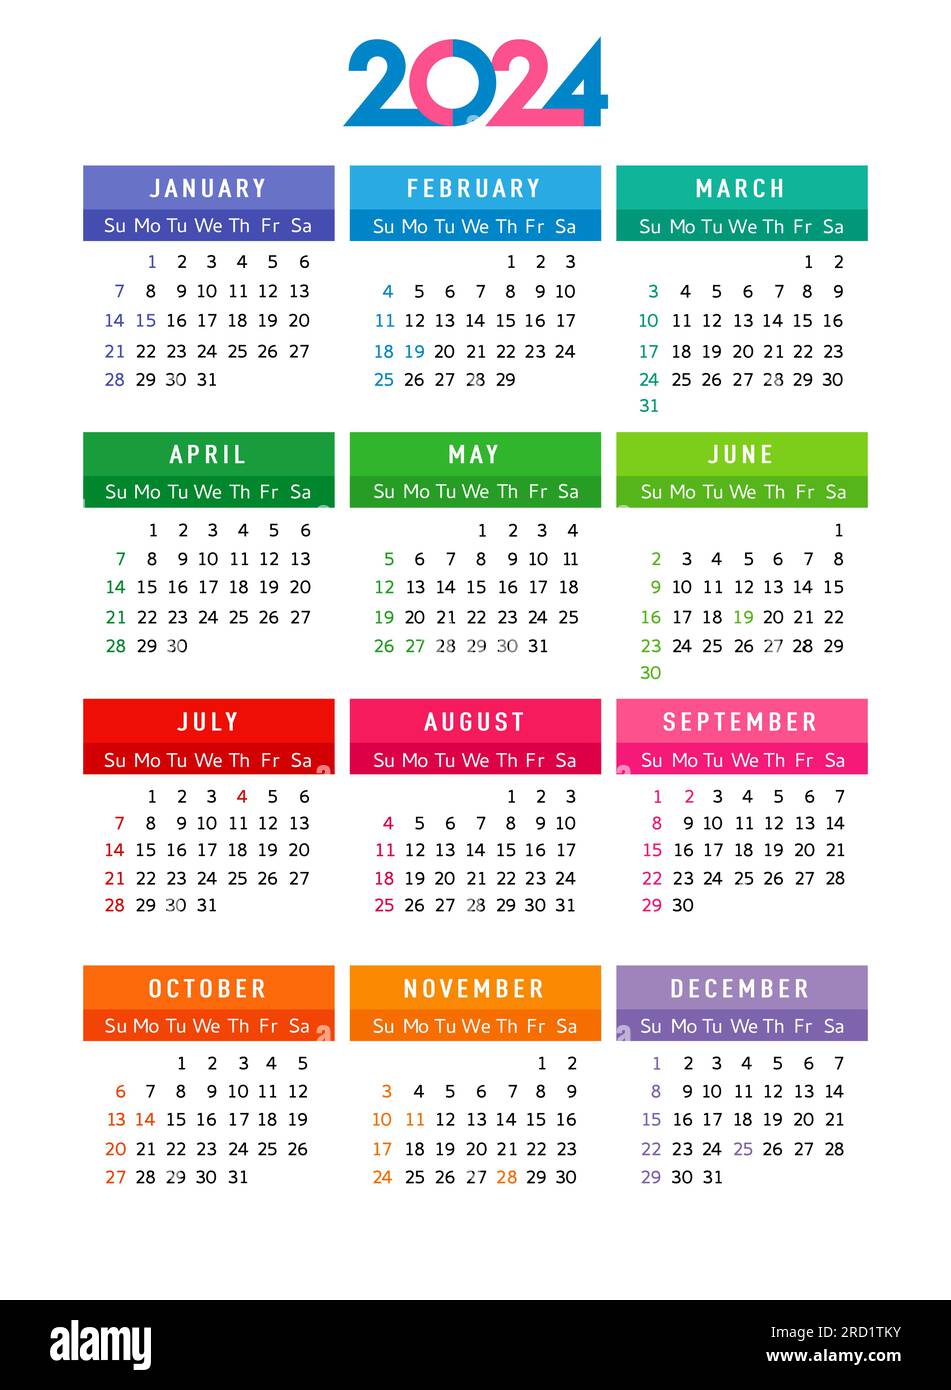 Calendrier 2024 année, la semaine de modèle modifiable commence le dimanche avec les jours fériés aux États-Unis. Modèle de calendrier conception 2024 pour le planificateur d'affaires ou l'horaire. Vecteur Ilu Illustration de Vecteur